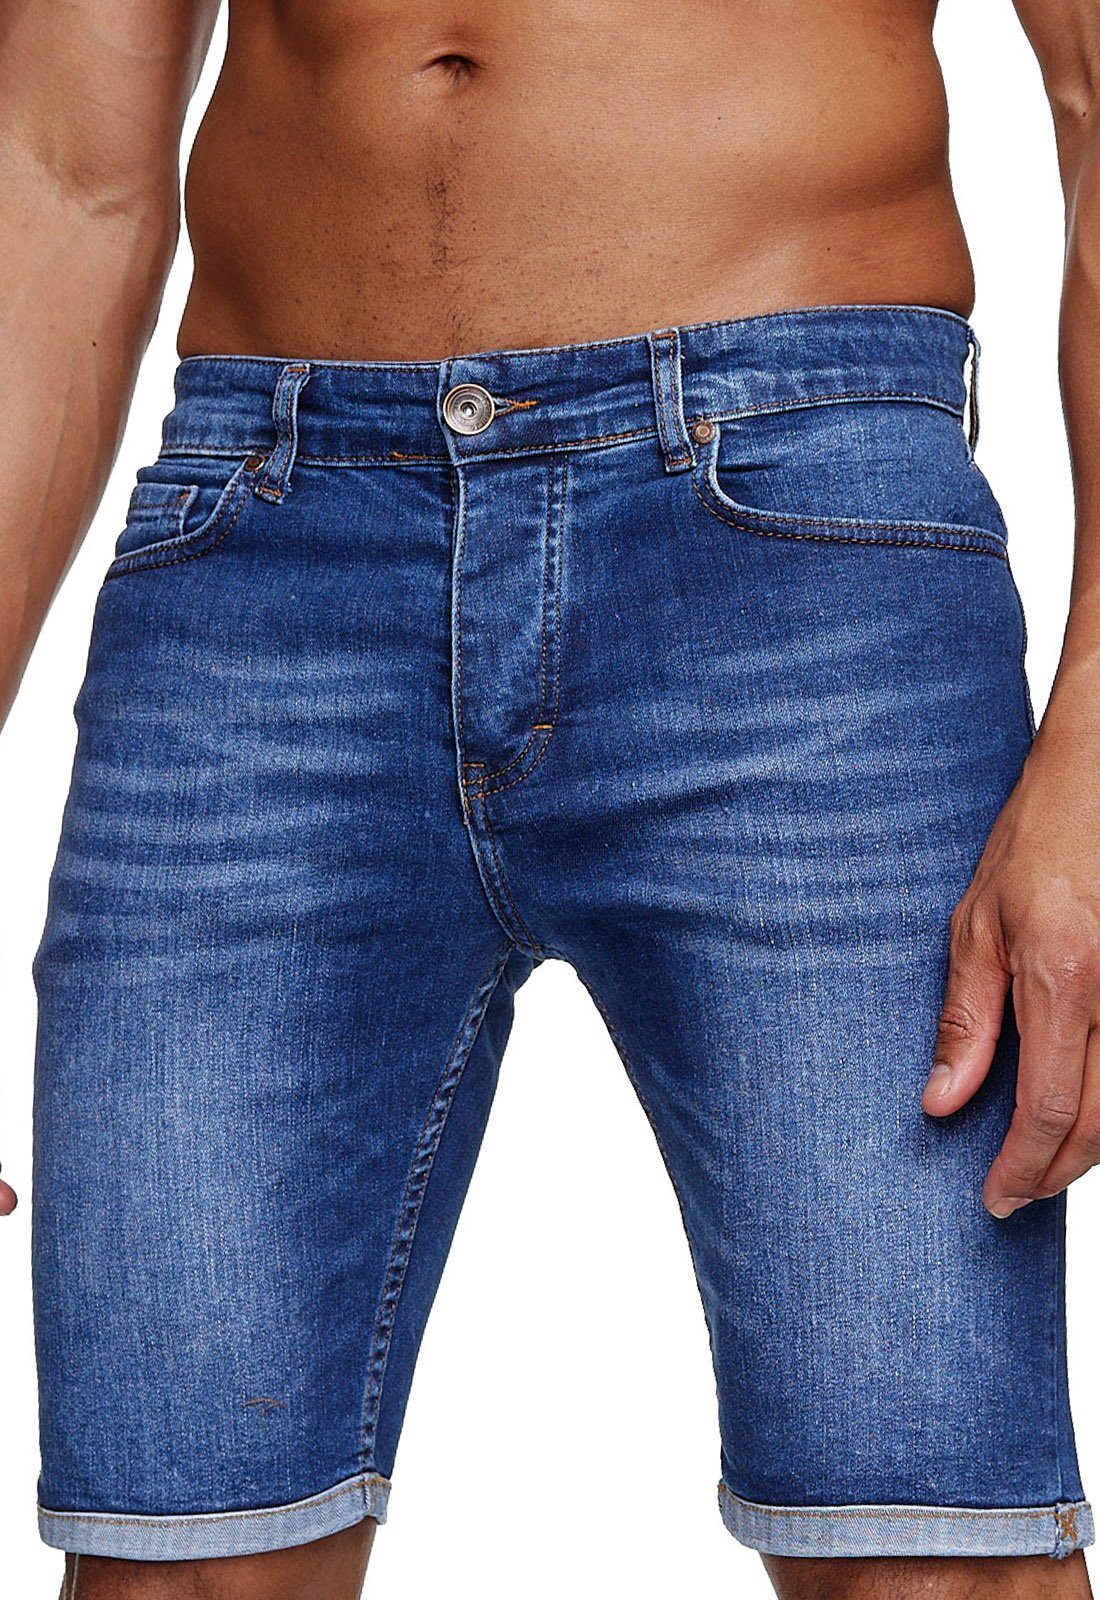 Reslad Jeansshorts »Reslad Jeans Shorts Herren Kurze Hosen Sommer l« Denim  Jeansbermudas Stretch Jeans-Hose online kaufen | OTTO